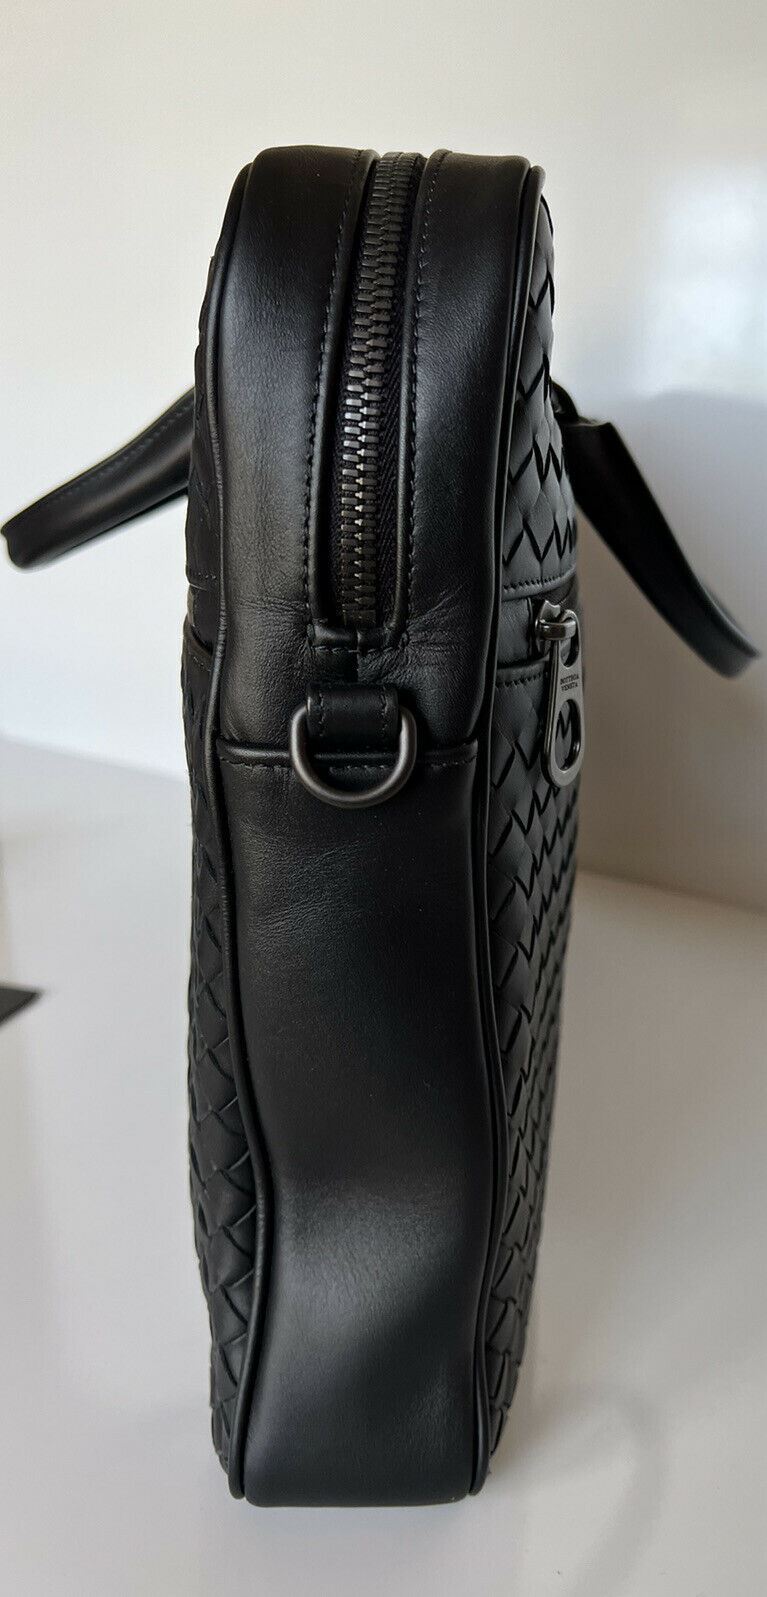 NWT $3200 Черный кожаный портфель Intrecciato Bottega Veneta Италия 577537 